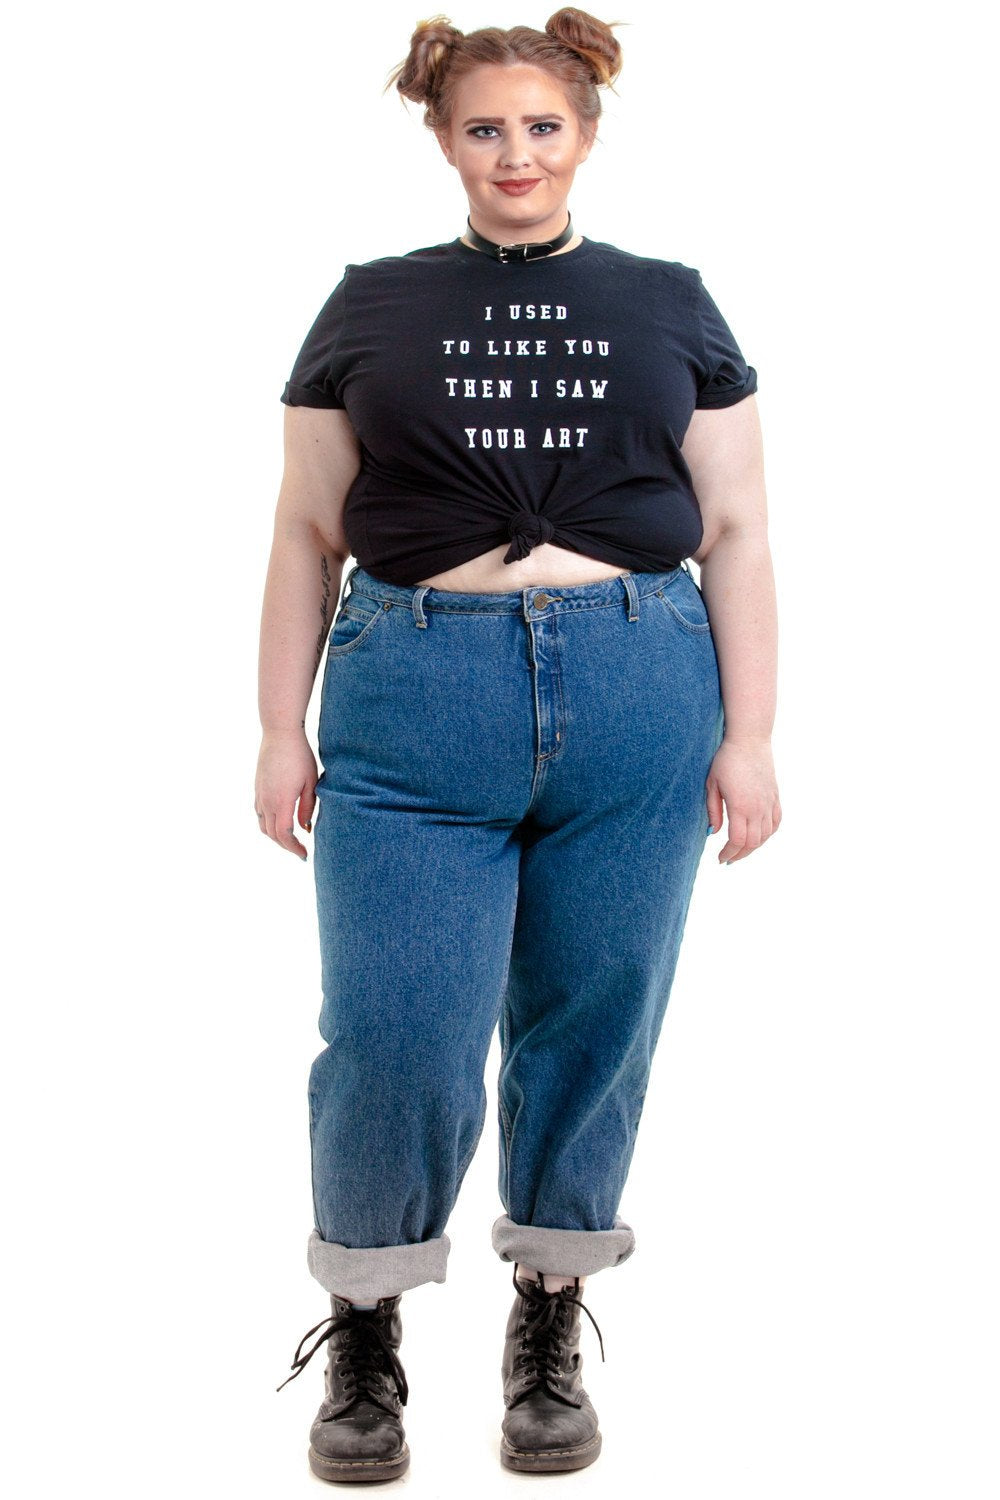 Широкие джинсы женские на полных женщин фото